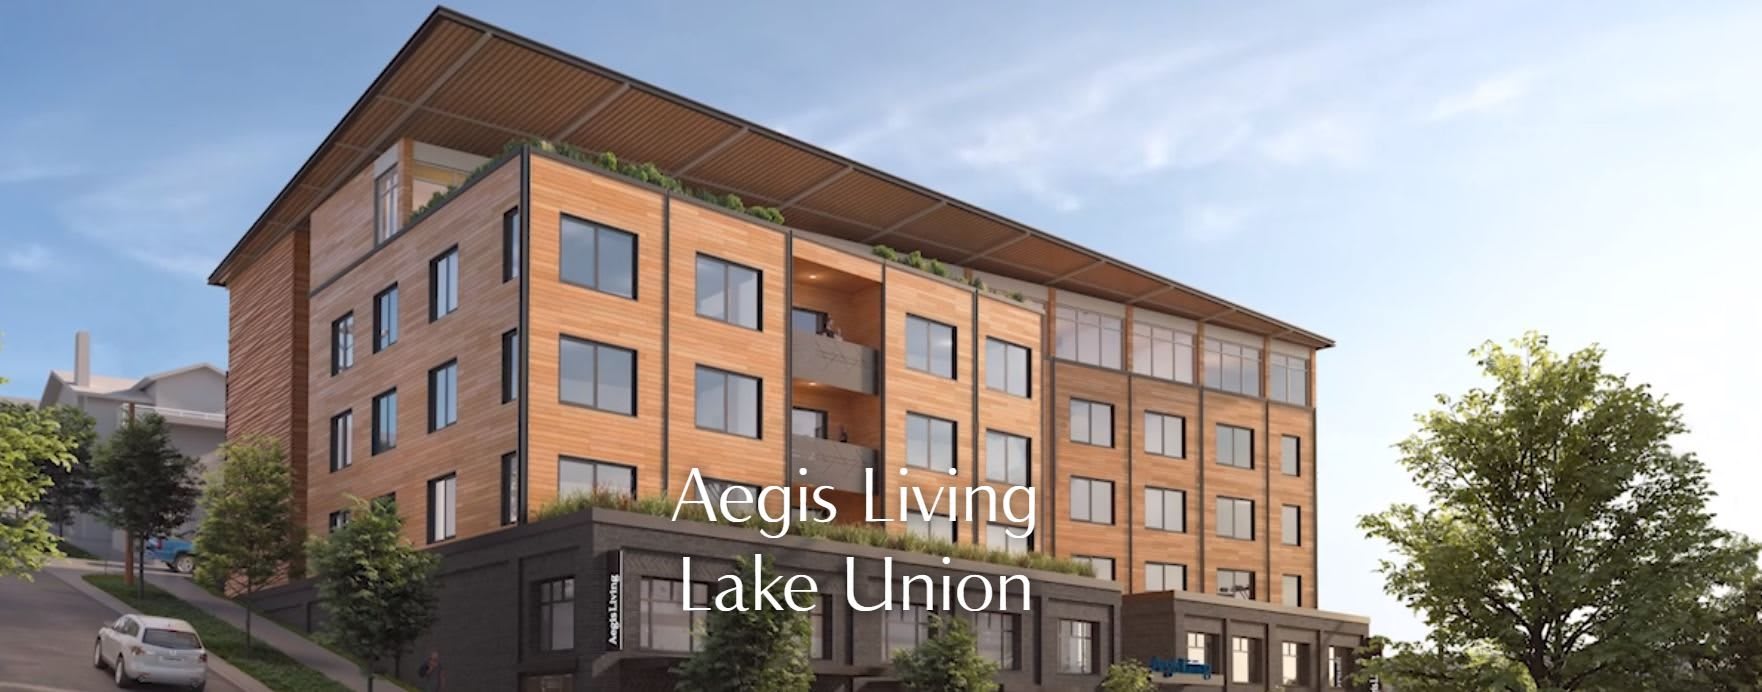 Aegis of Lake Union community exterior